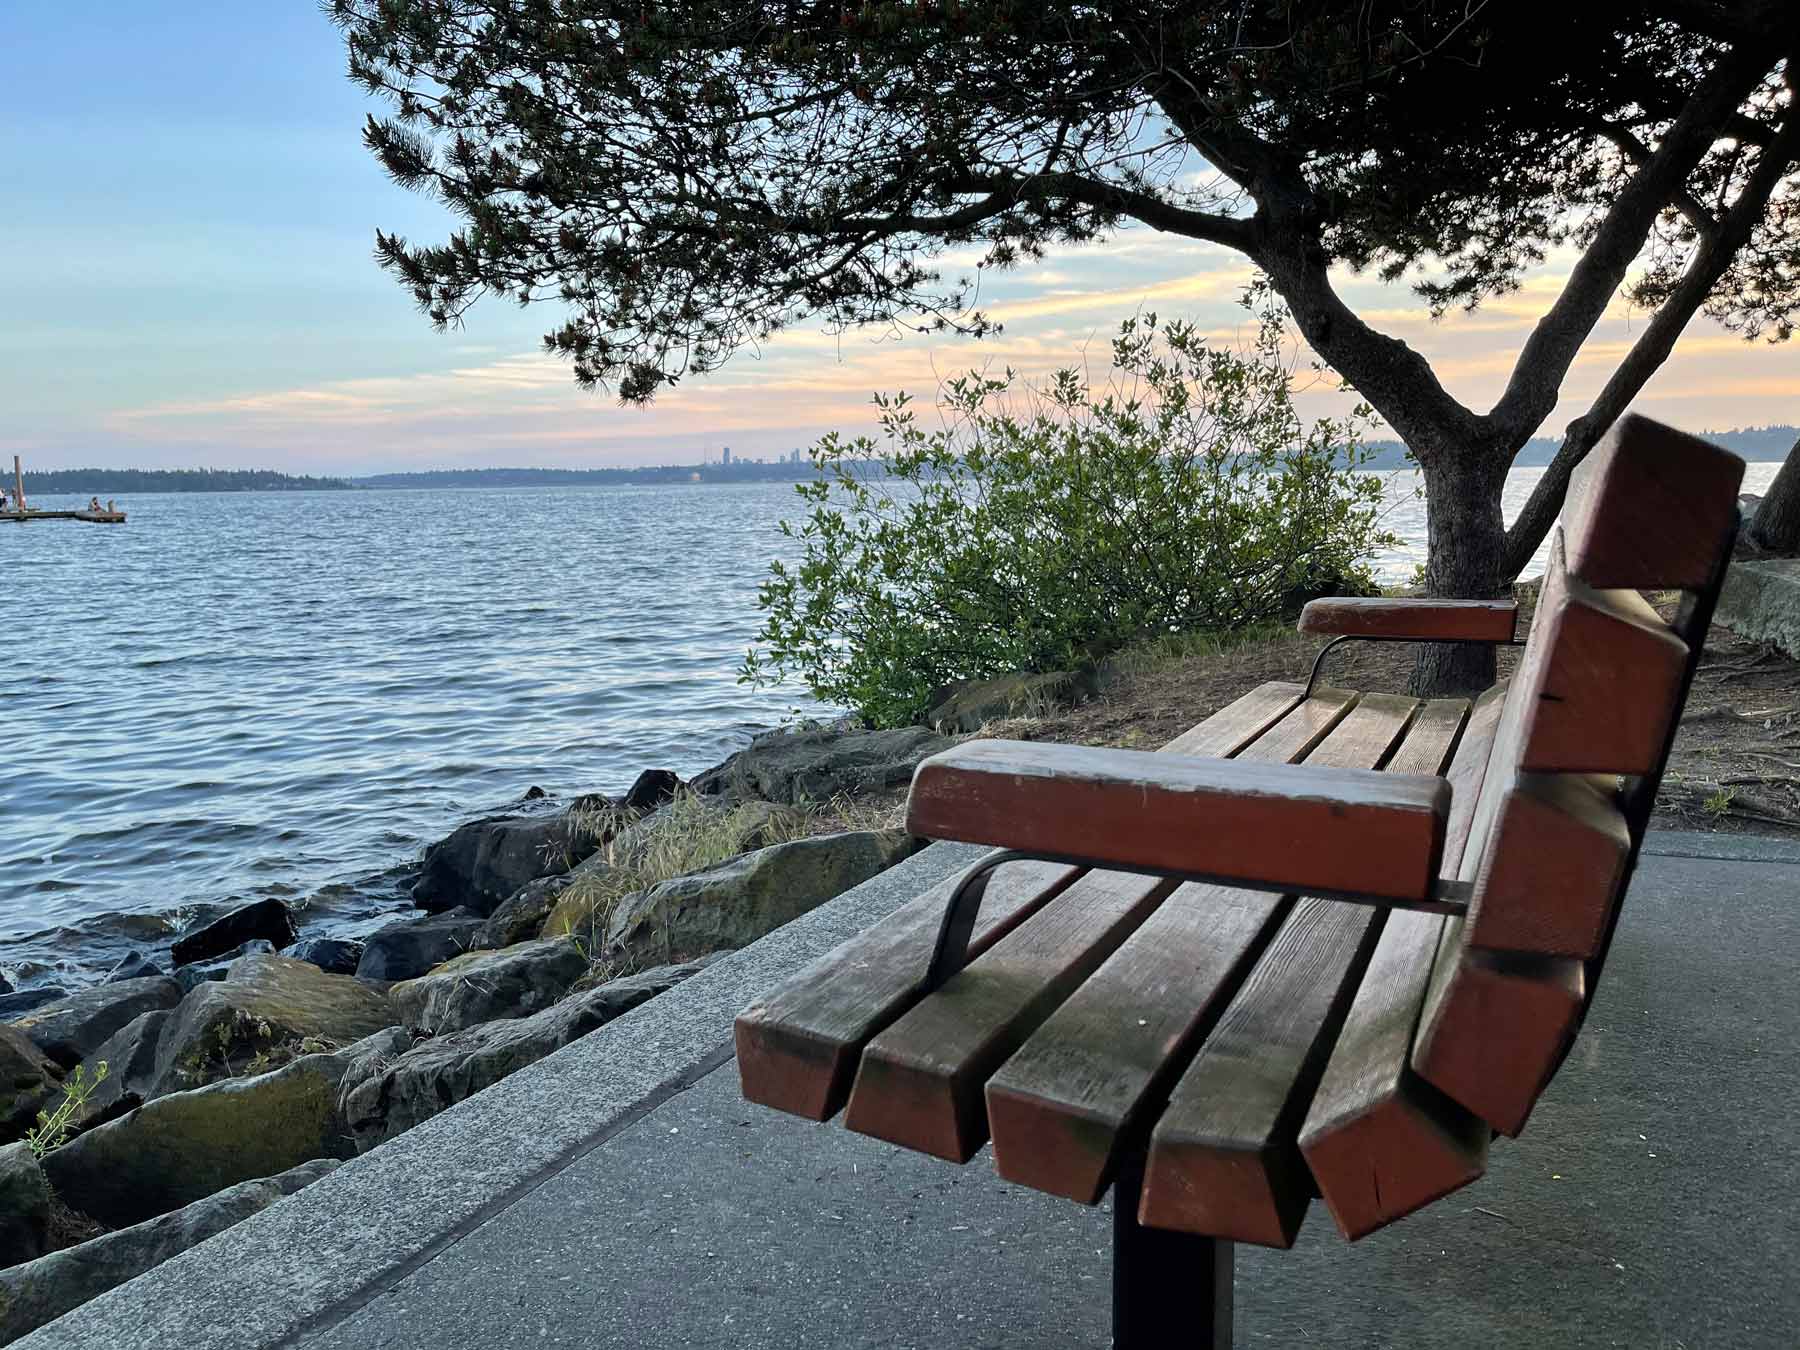 Kirkland waterfront bench on Lake Washington